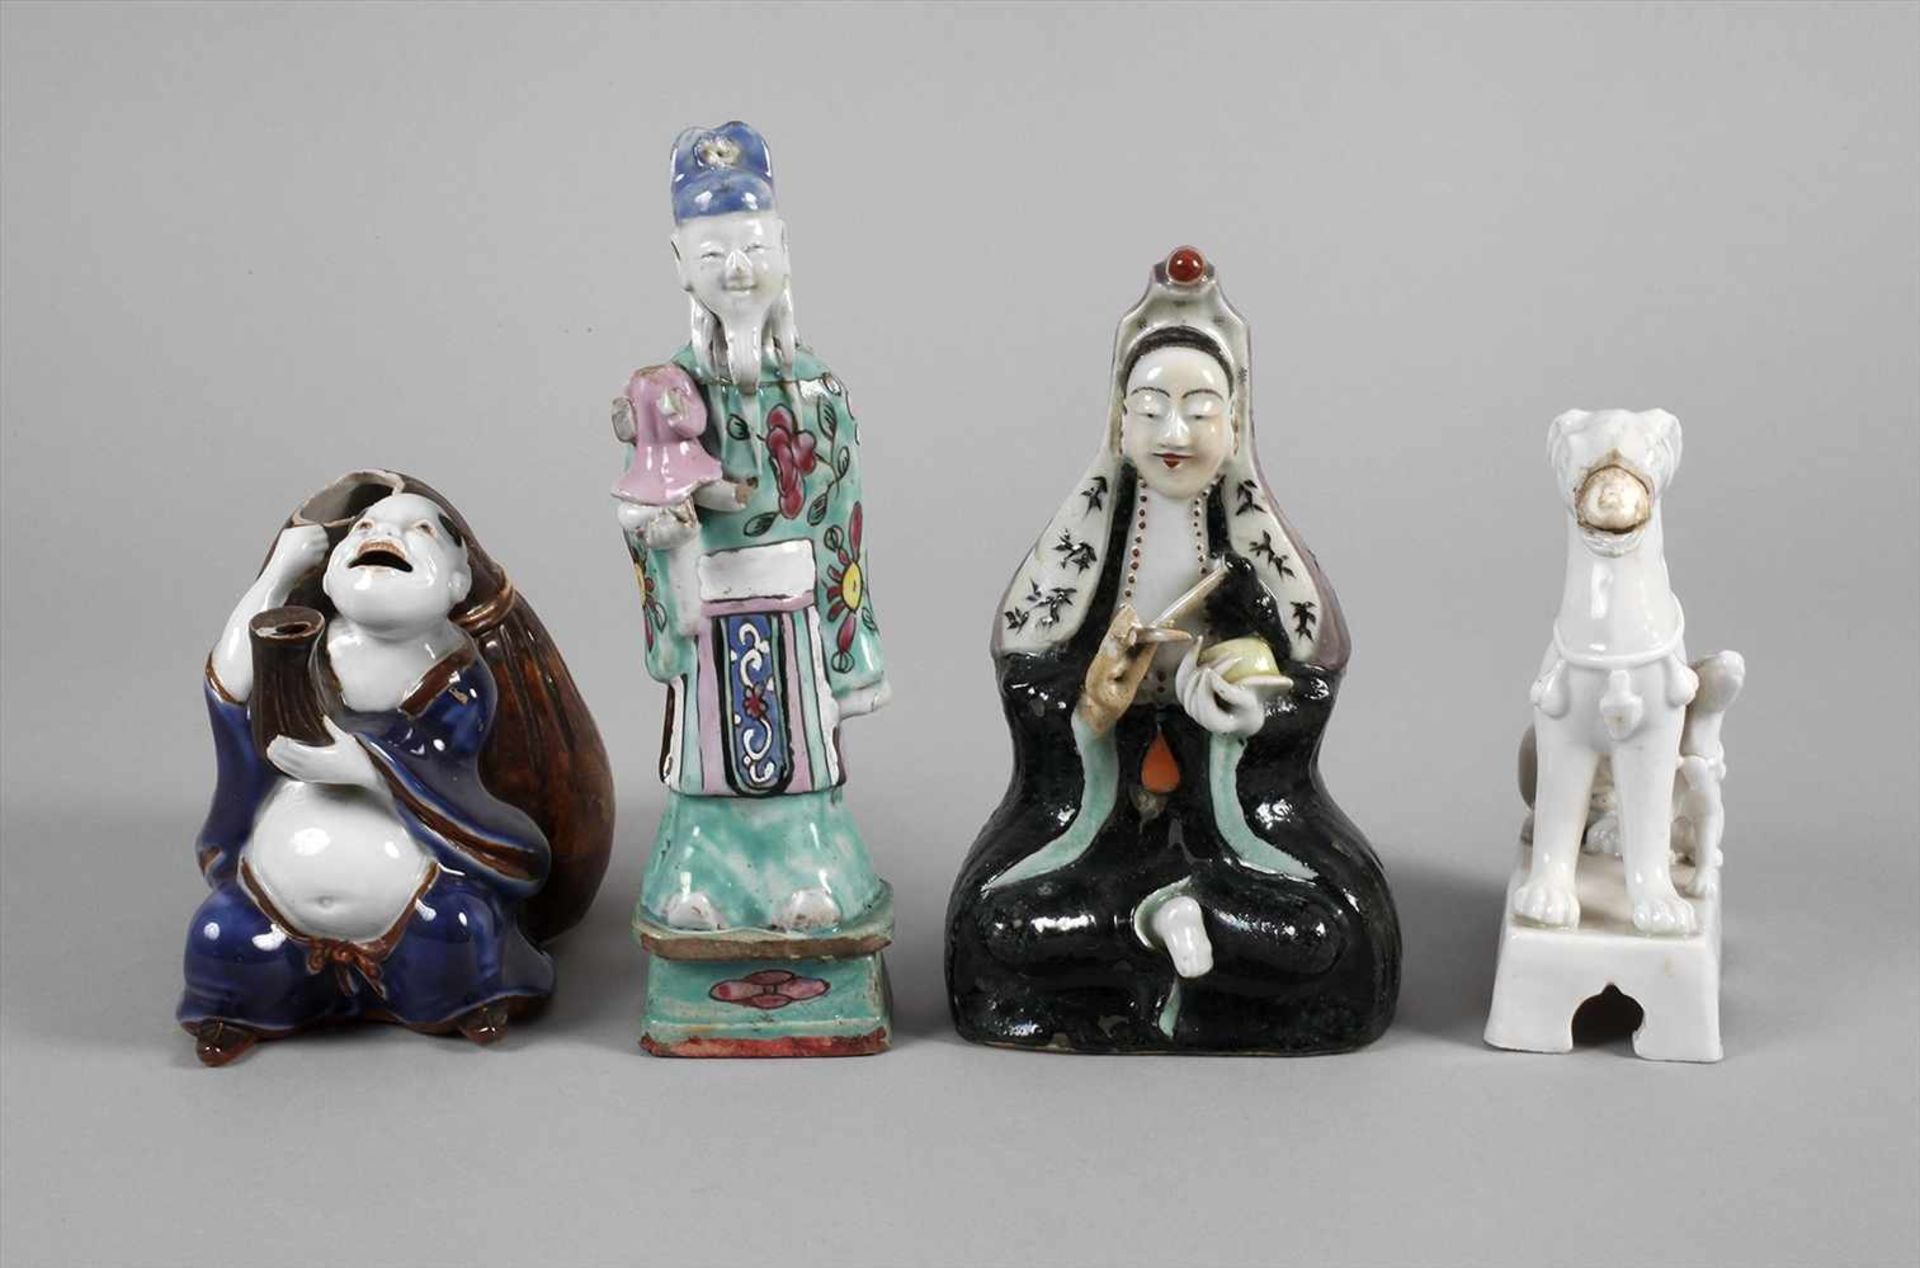 Vier PorzellanfigurenChina, 19. Jh., ungemarkt, Weißporzellan bzw. Porzellan in polychromer